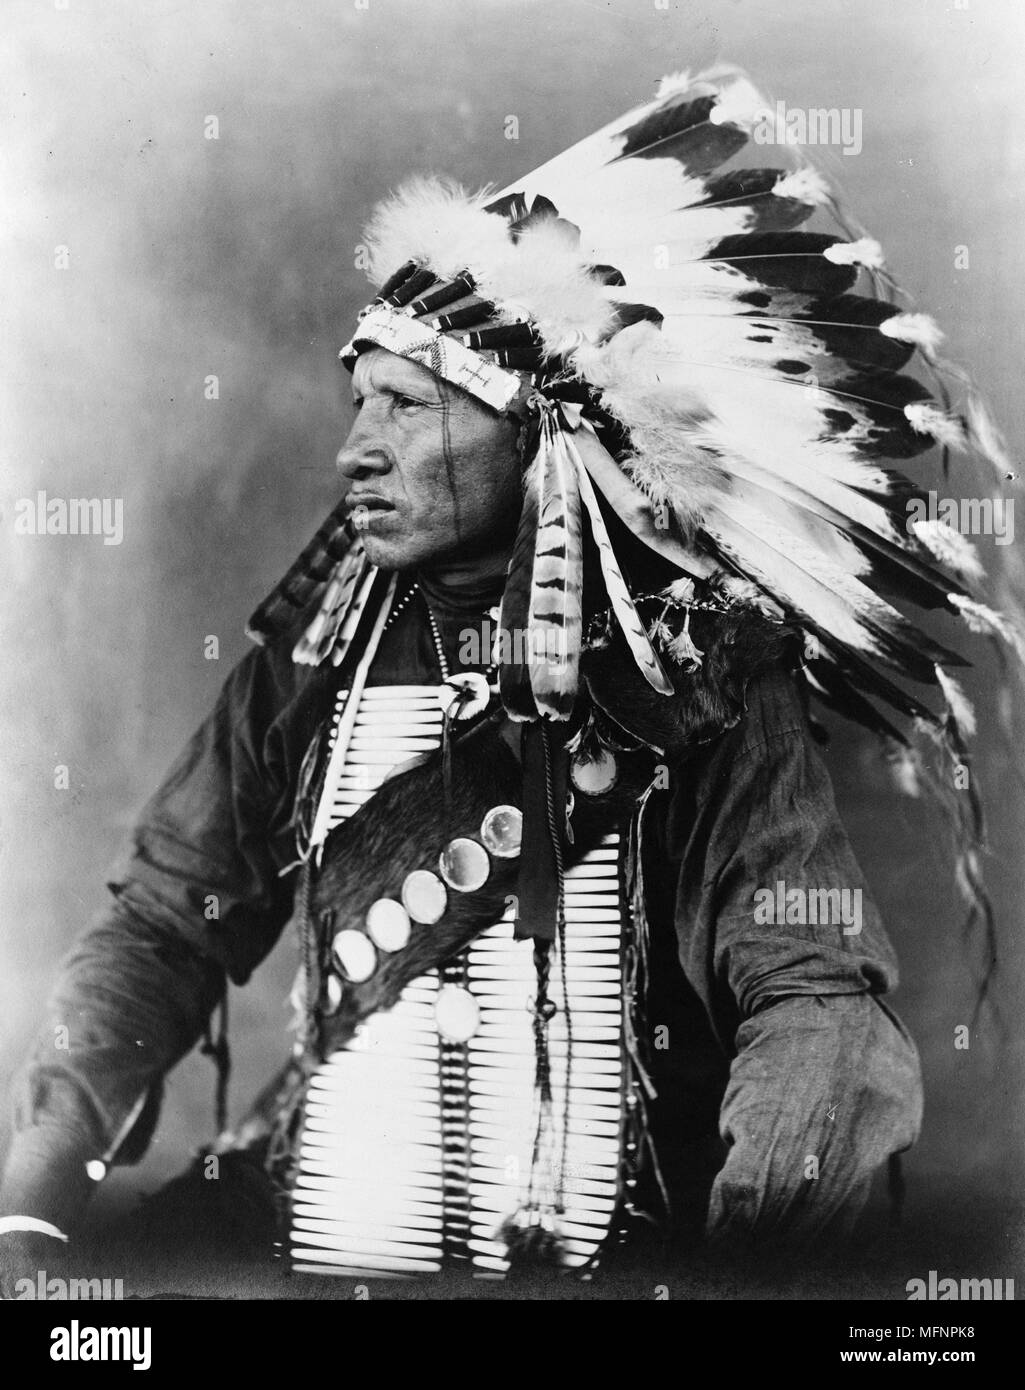 Pájaro Rojo, indios Sioux, de media longitud vertical, sentado, mirando hacia la izquierda, luciendo un tocado de plumas, c1908. Fotografía de John A. Johnson Foto de stock